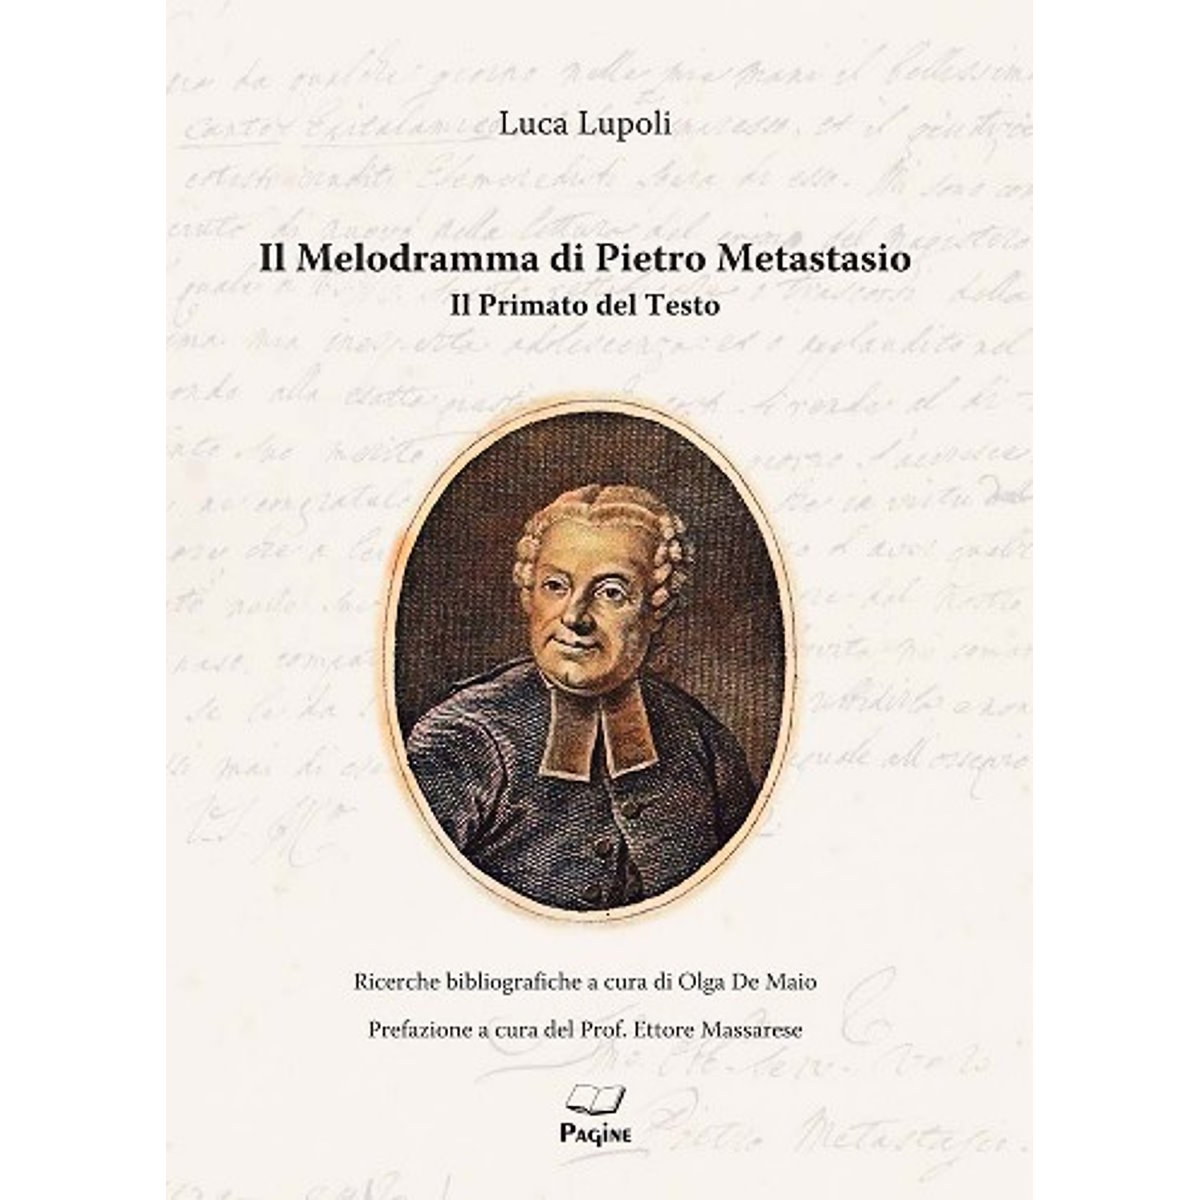 Alla scoperta de Il Melodramma di Pietro Metastasio, saggio di Luca Lupoli